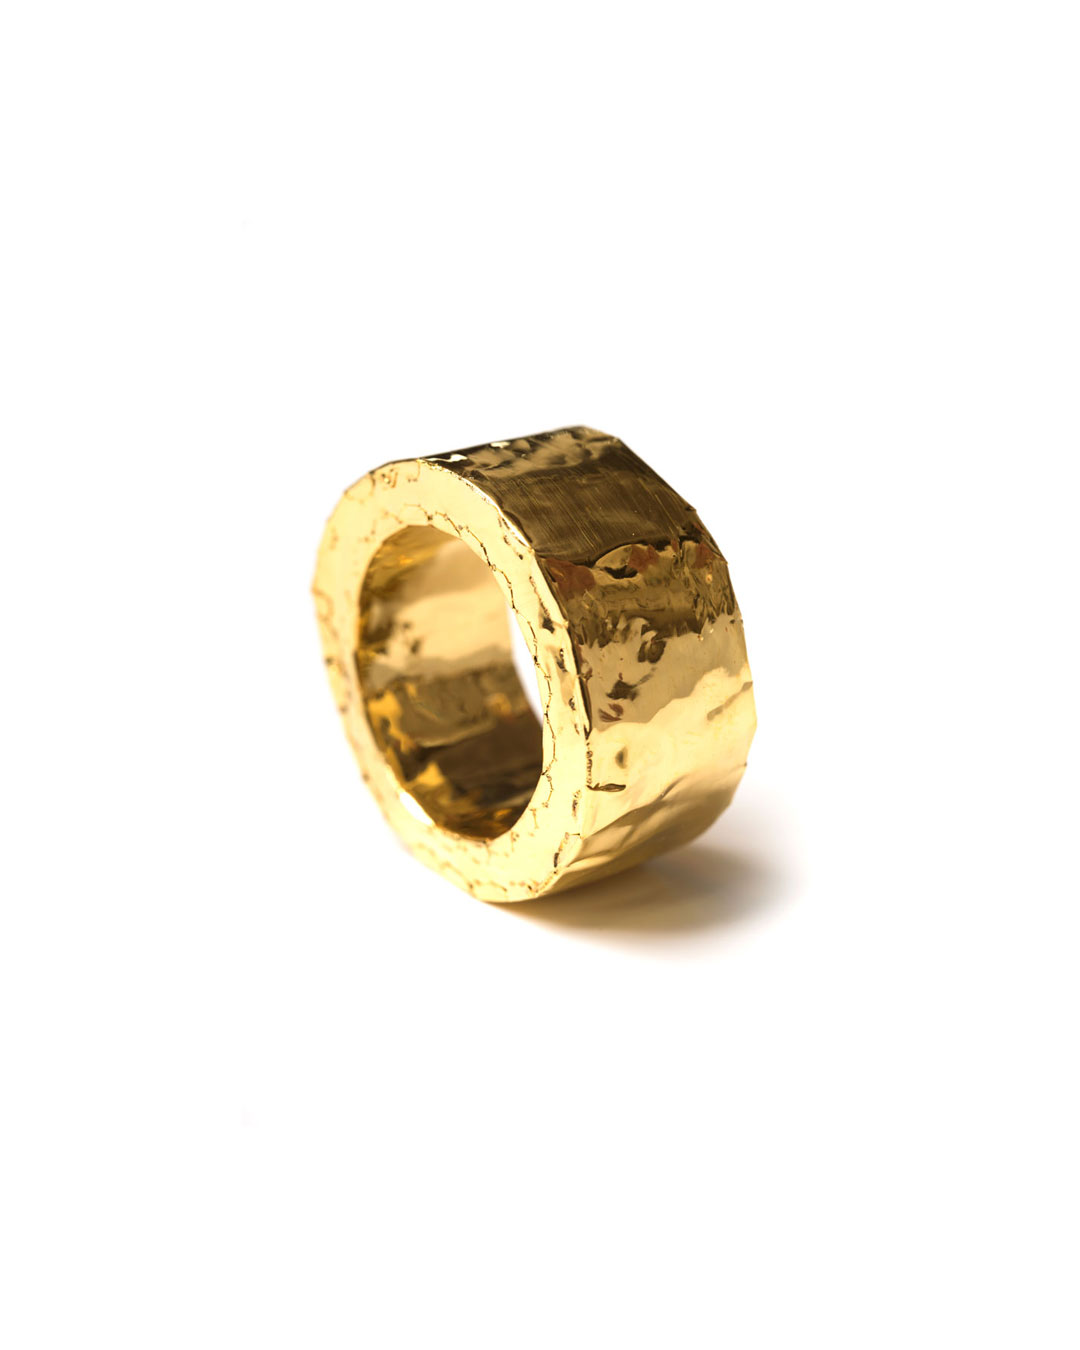 Carla Nuis, Furl 5, 2018, ring; fijn goud, 30 x 30 x 4 mm, €1250